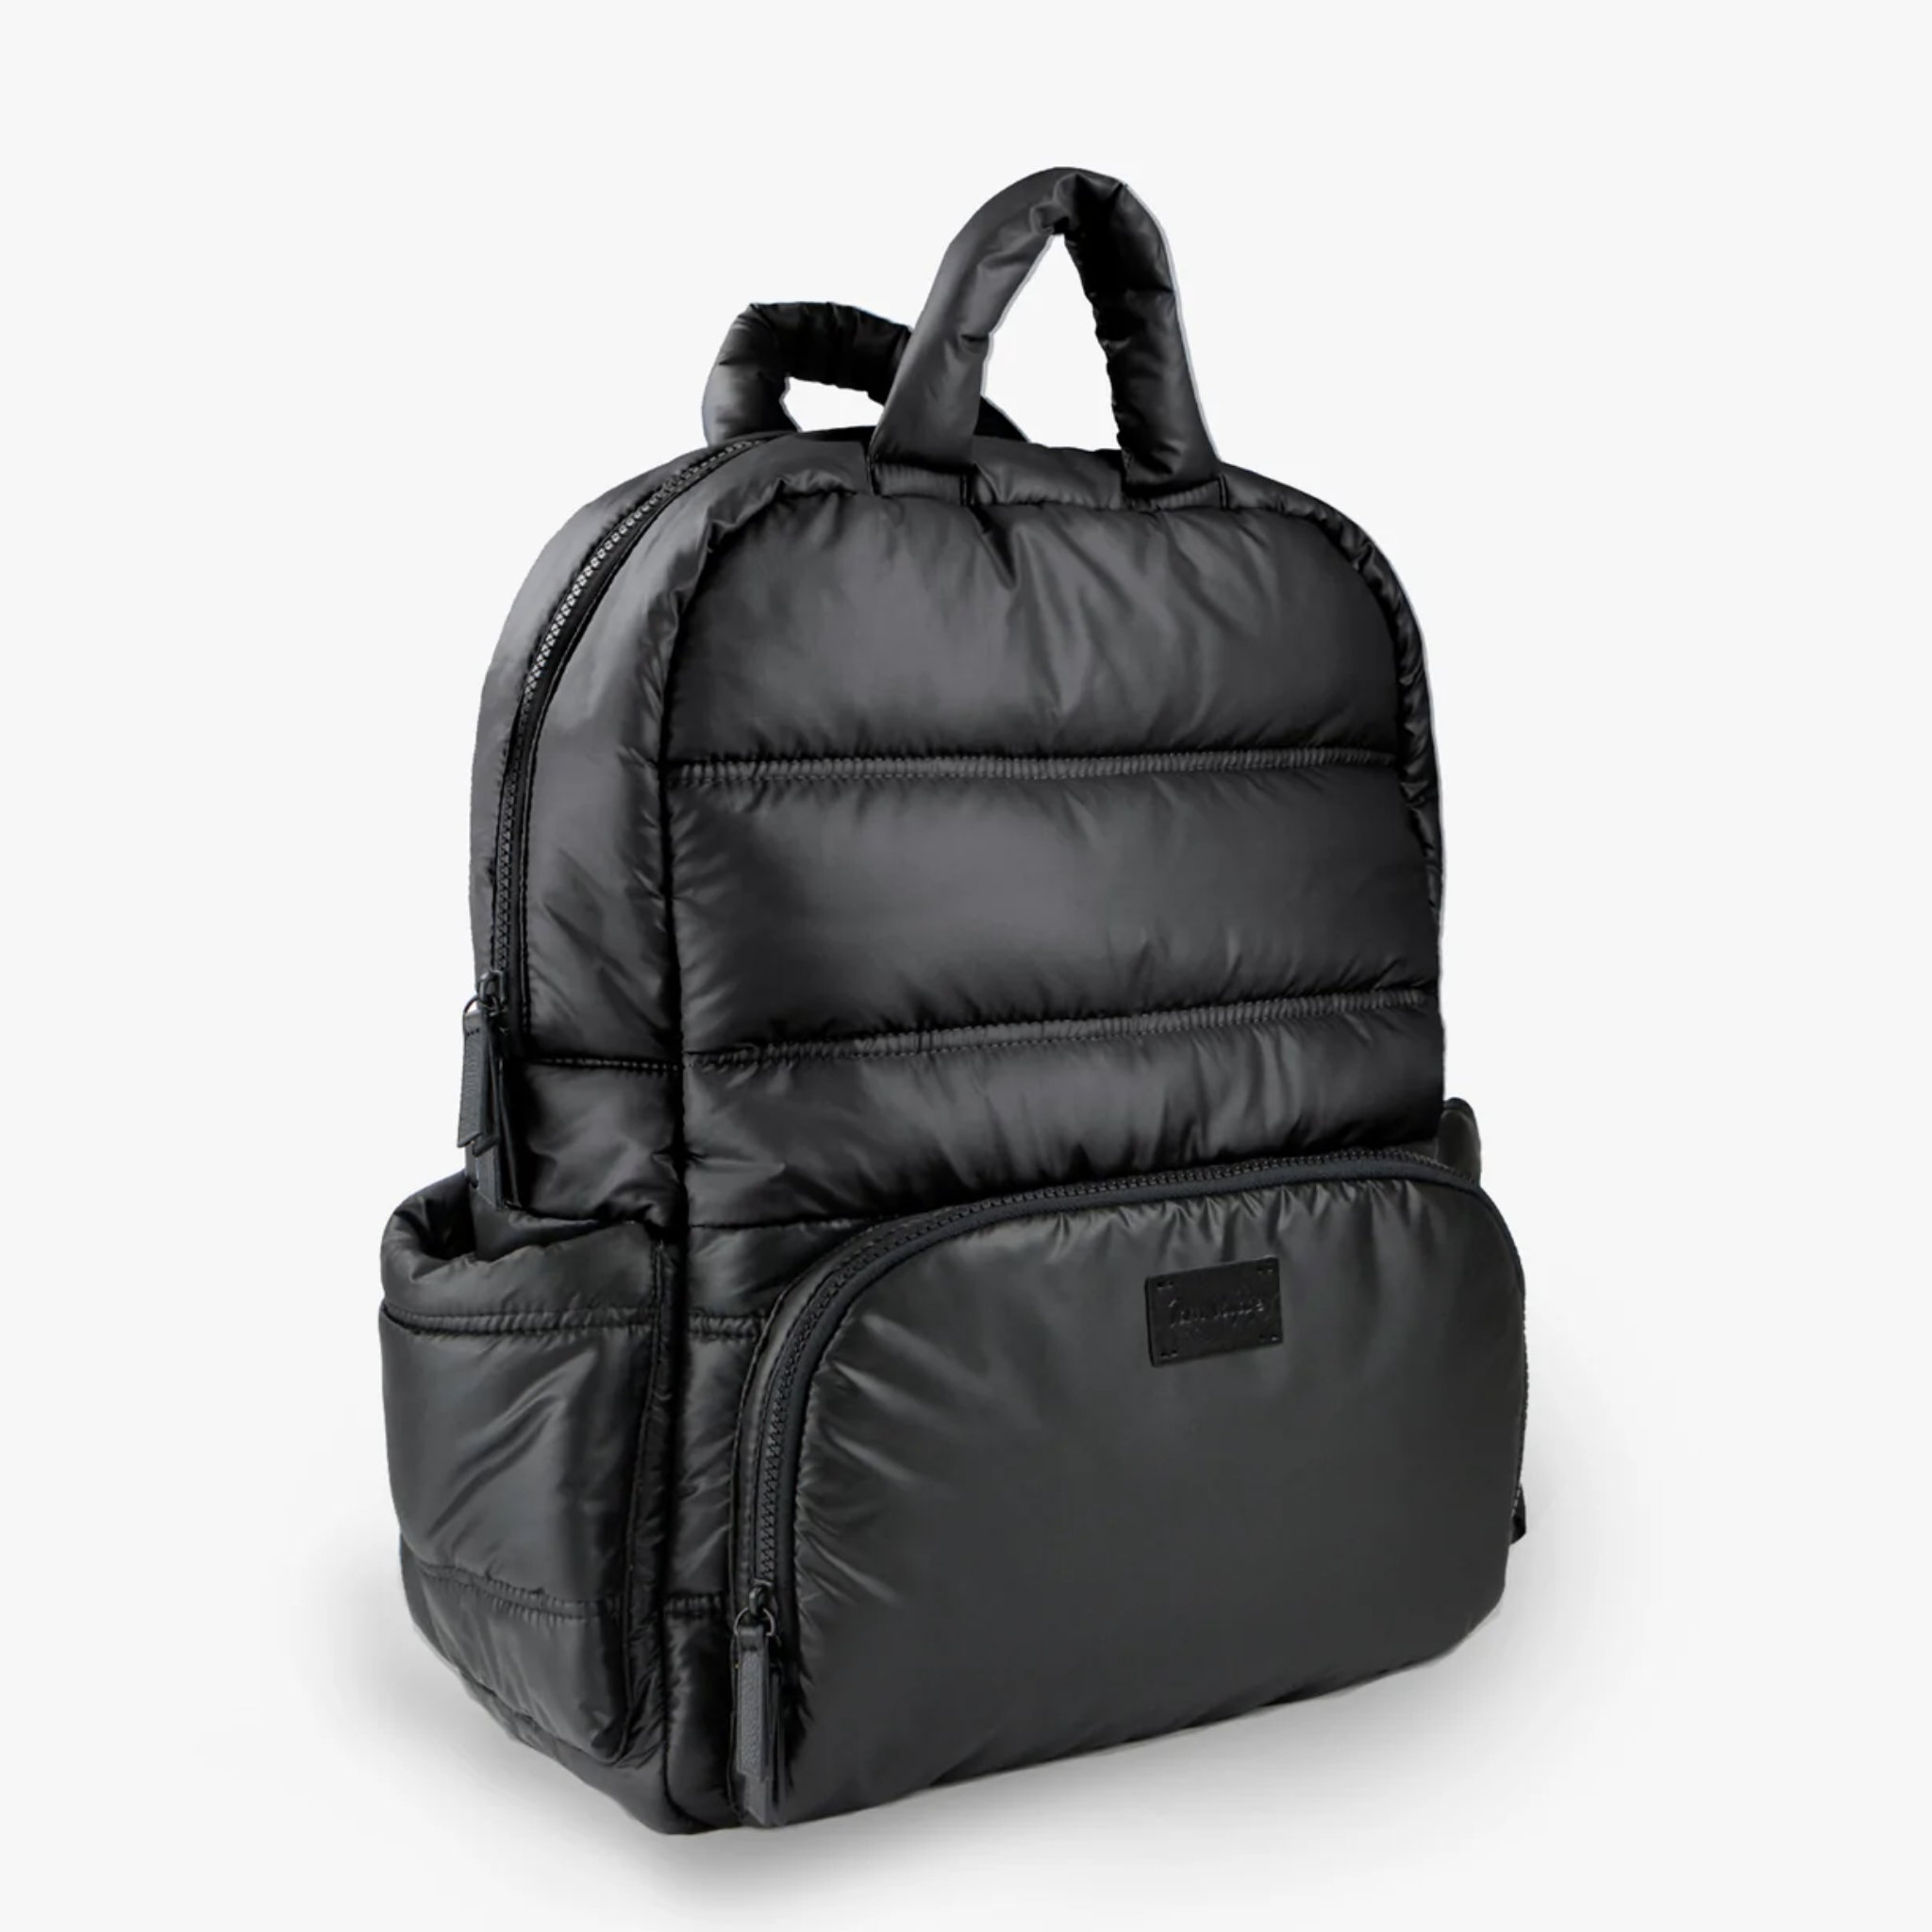 BK718 BACKPACK - Everyday Backpack